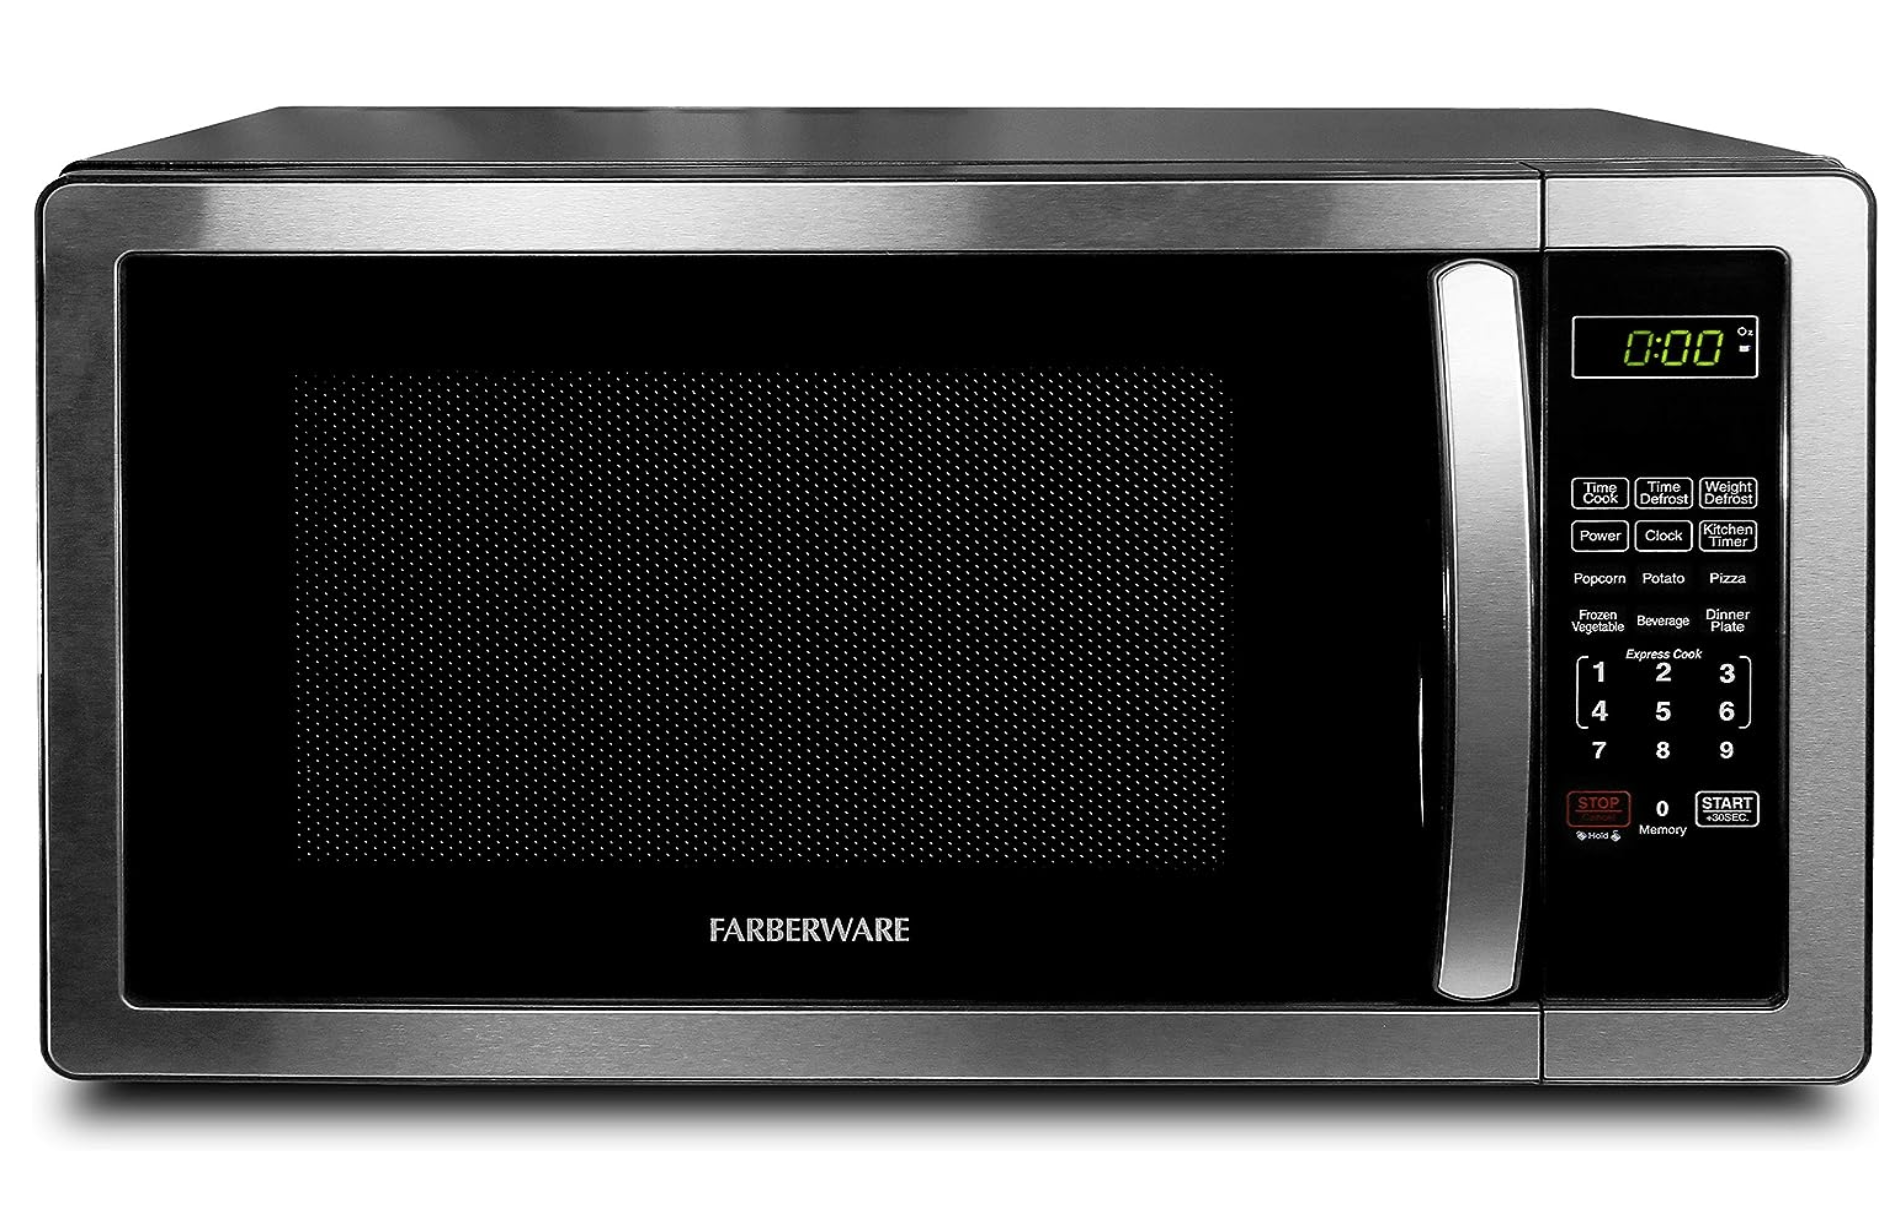 Best Microwave Under $100